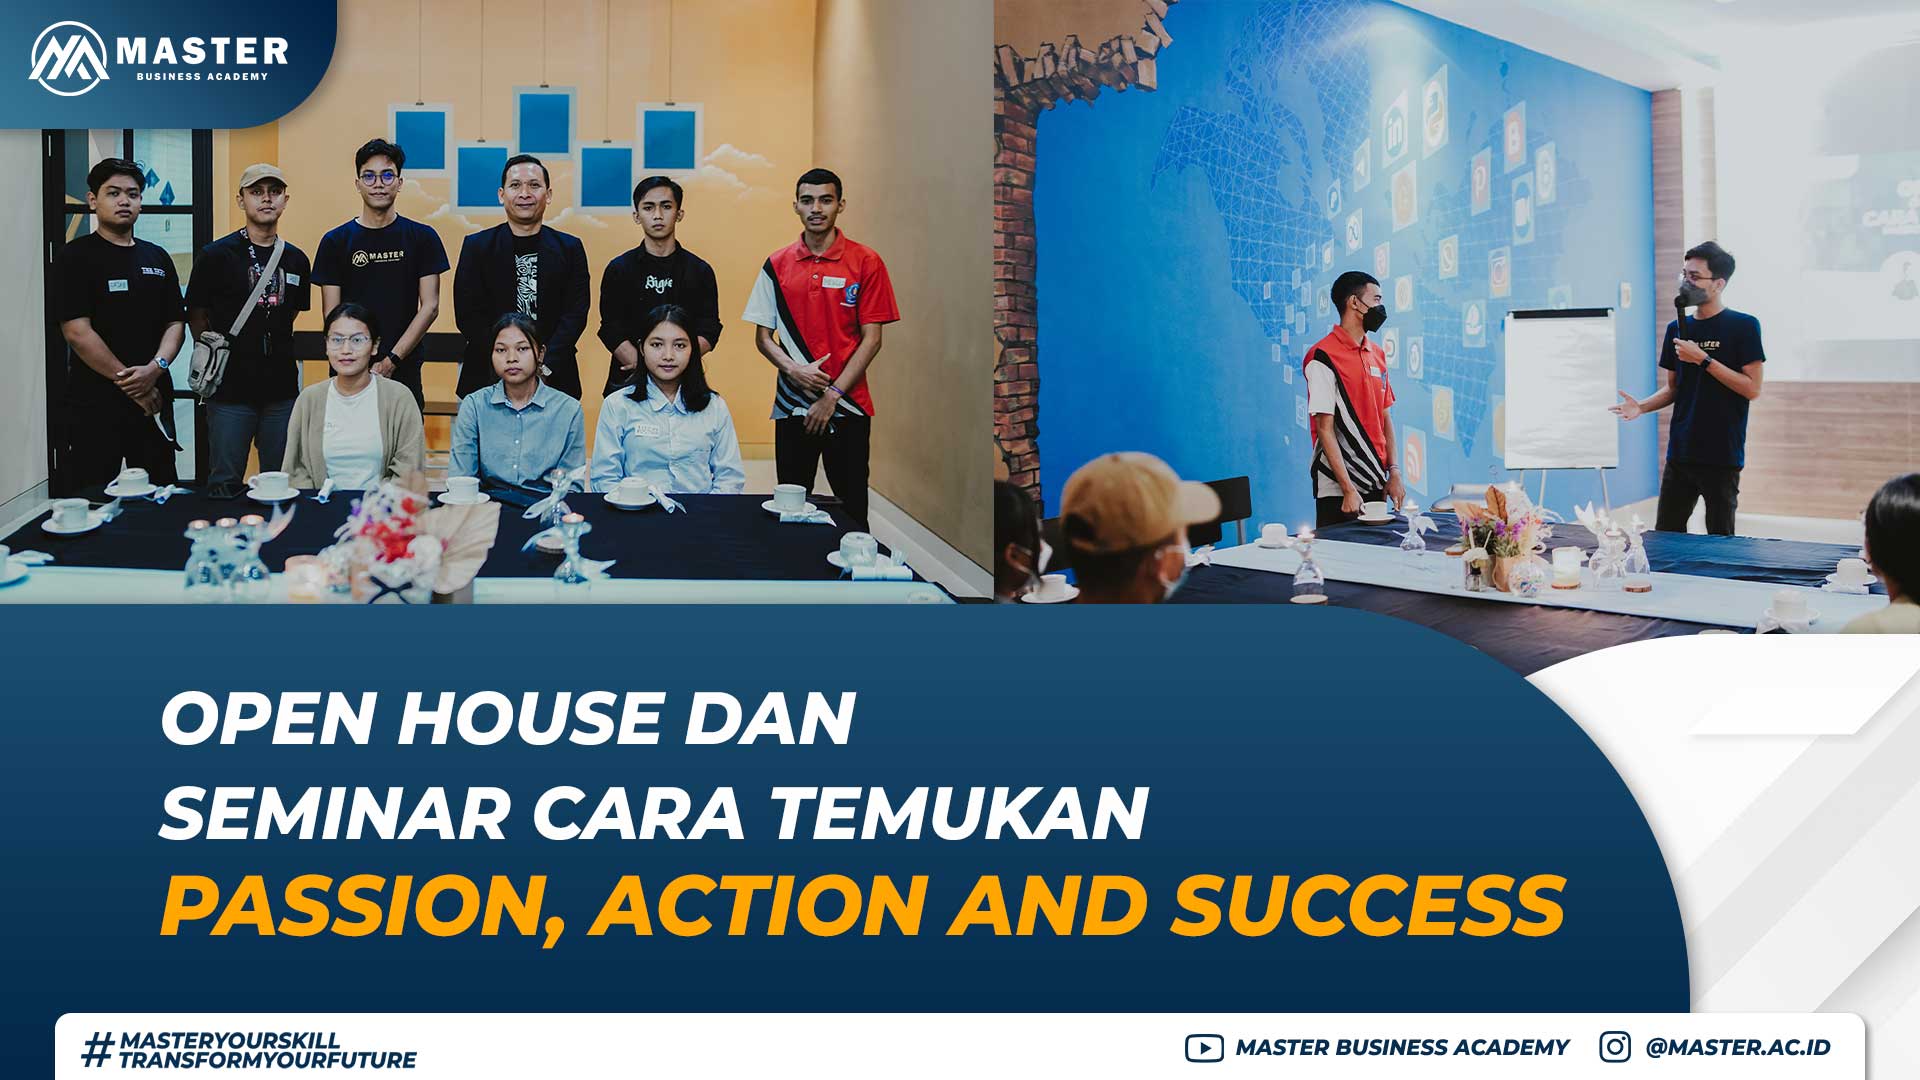 Open House dan Seminar Cara Temukan Passion, Action and Success